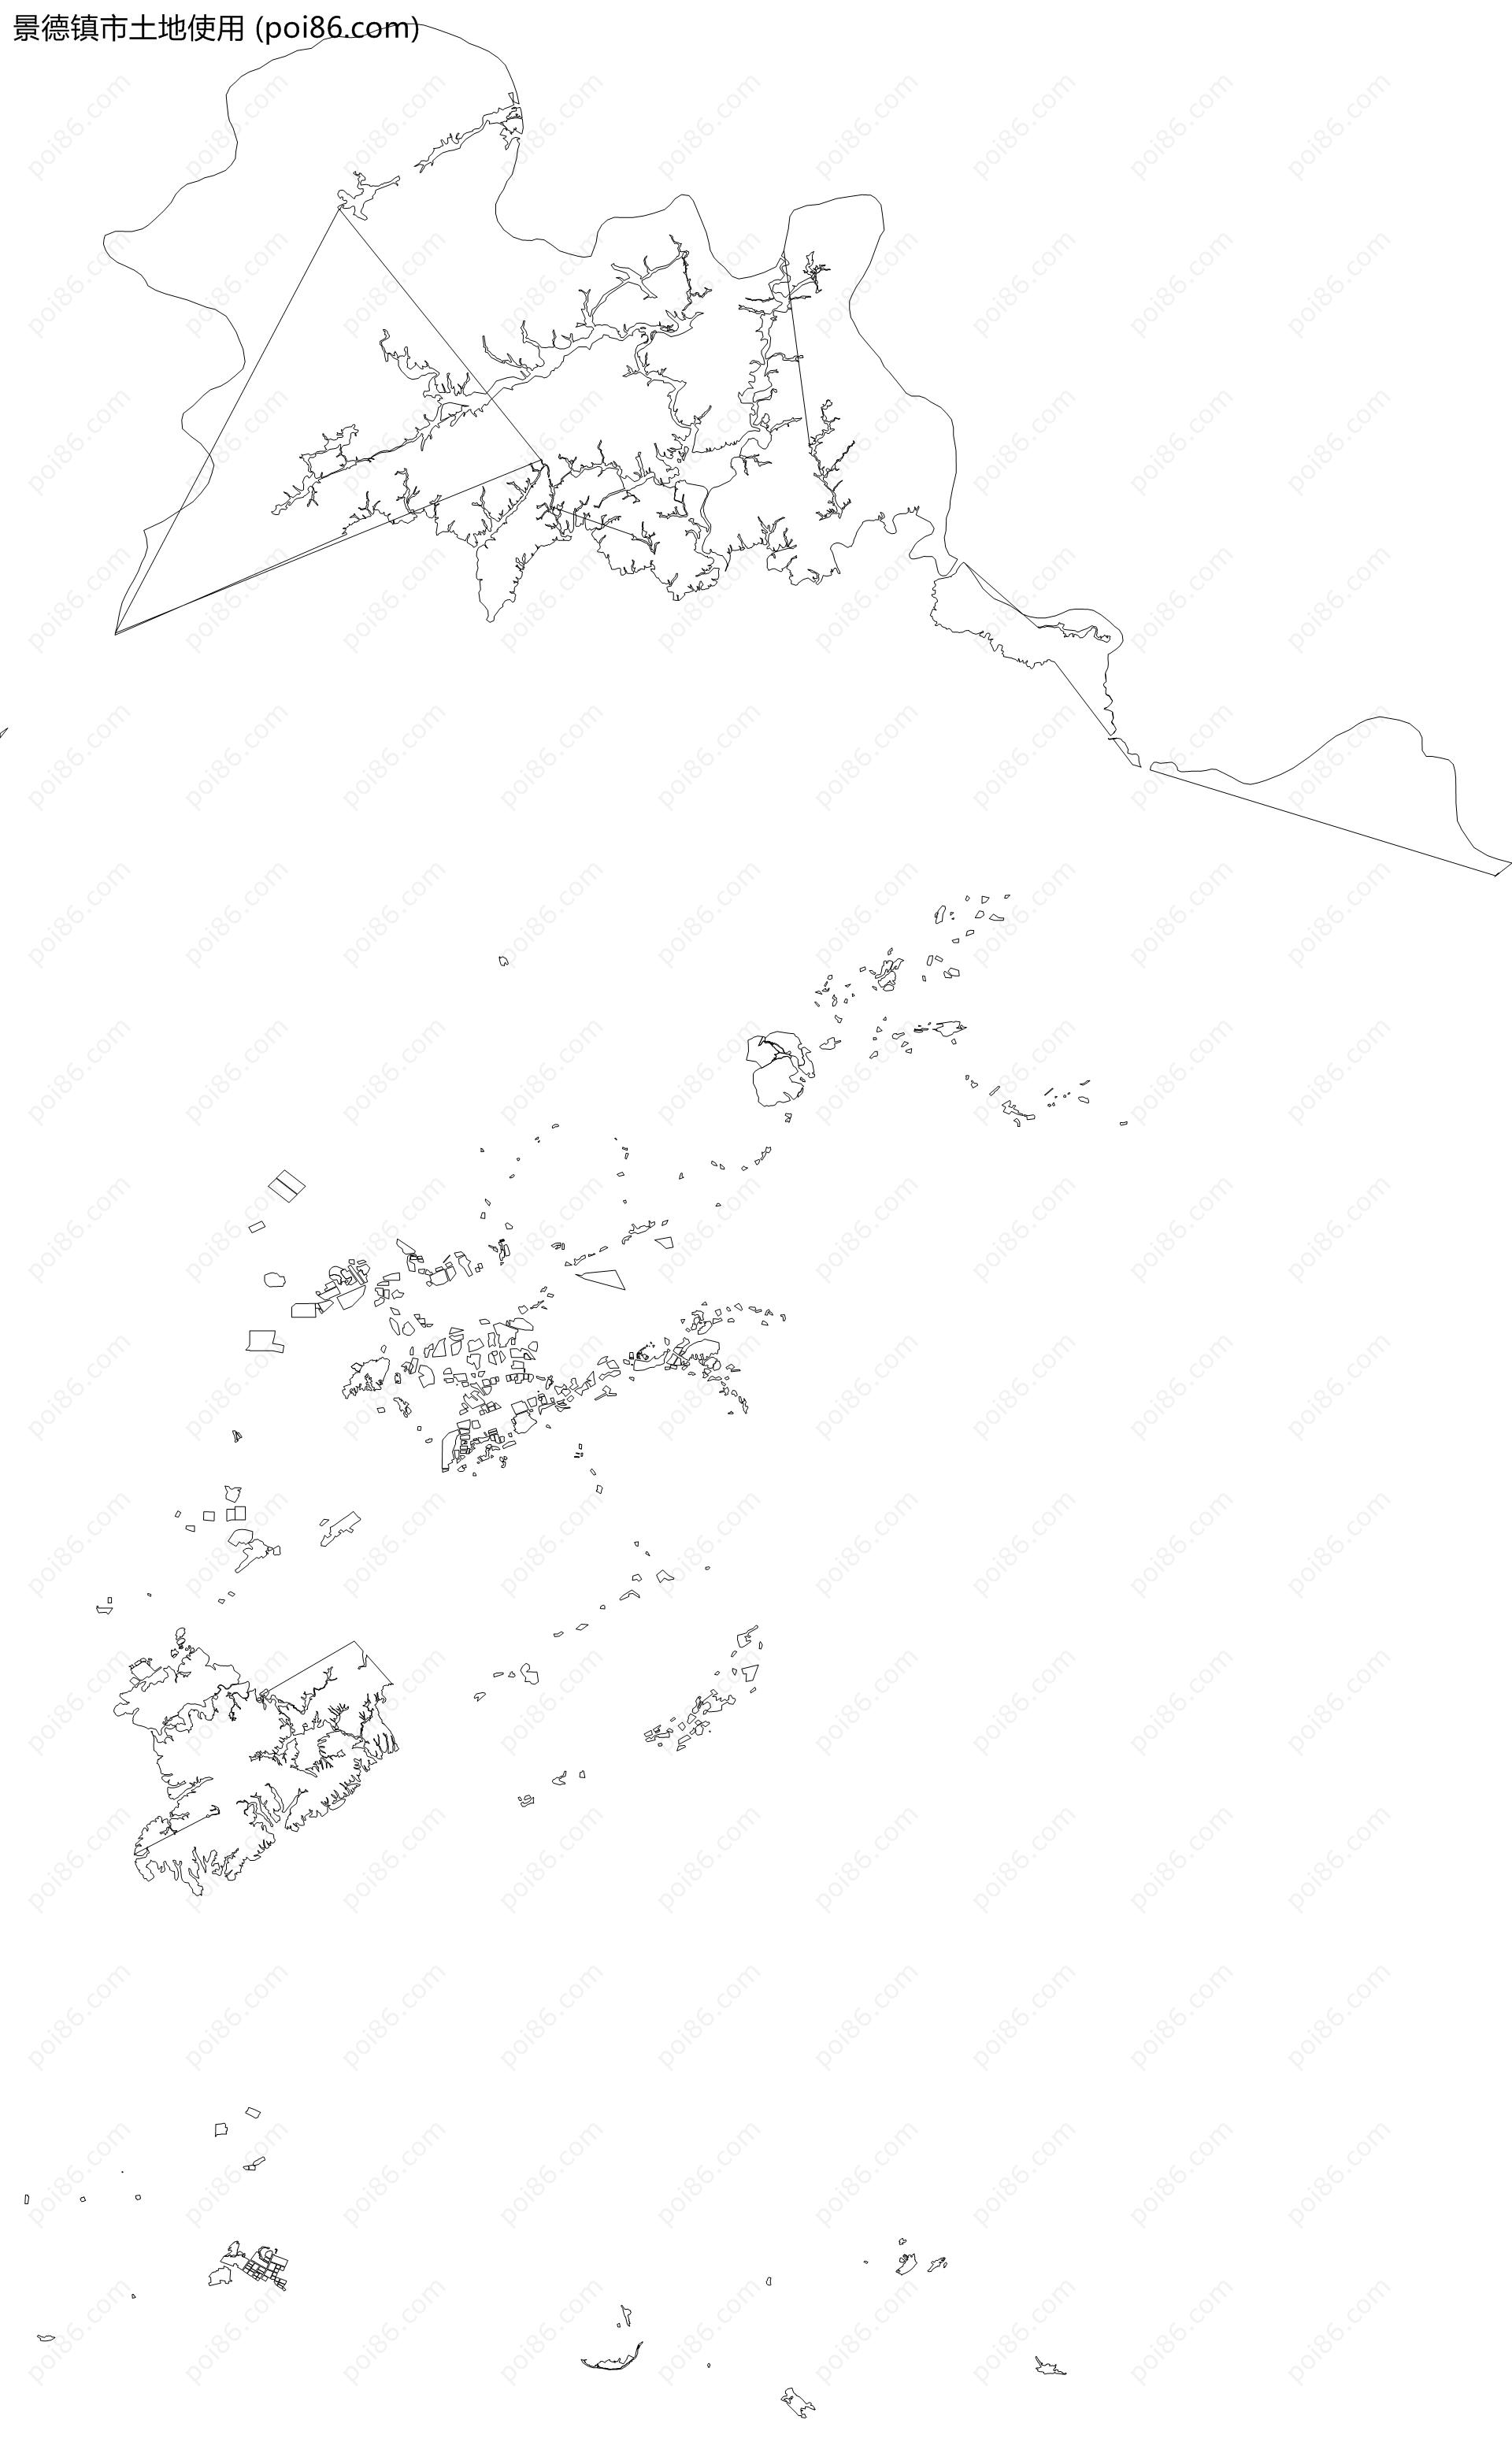 景德镇市土地使用地图